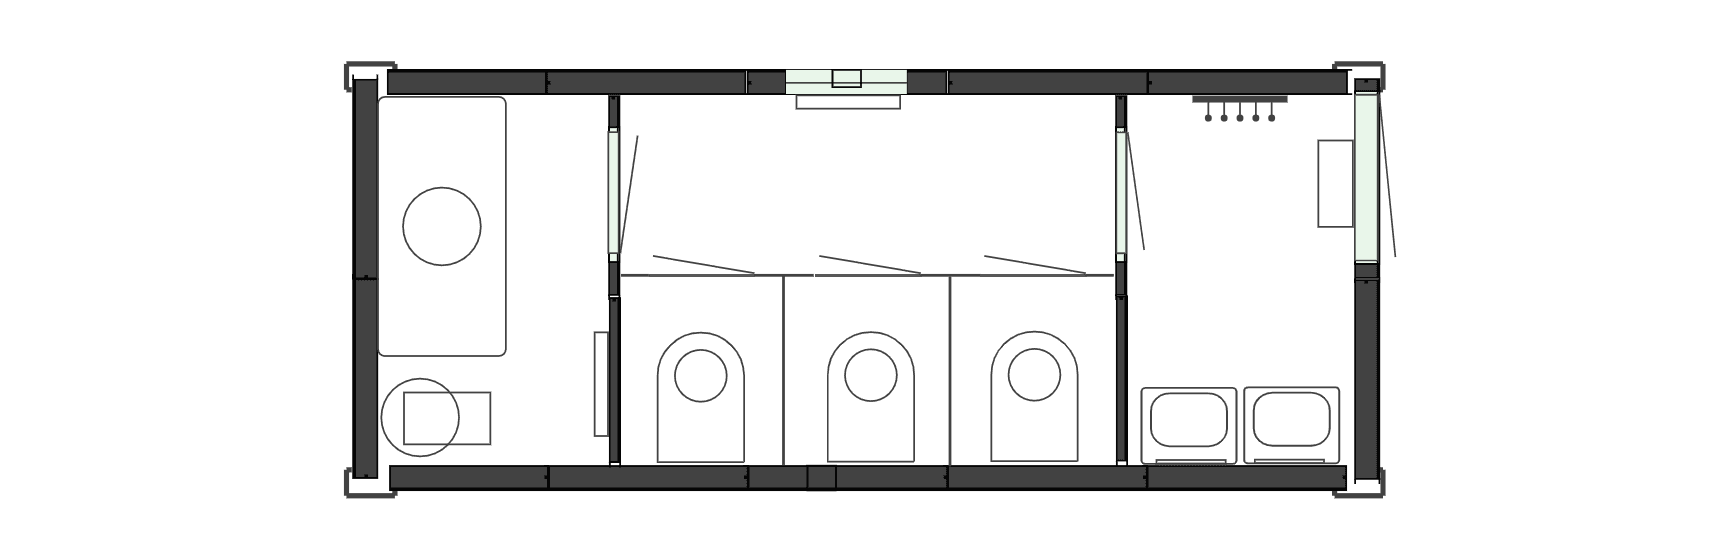 Планировочное решение для Вагон-туалет на 3 кабинки